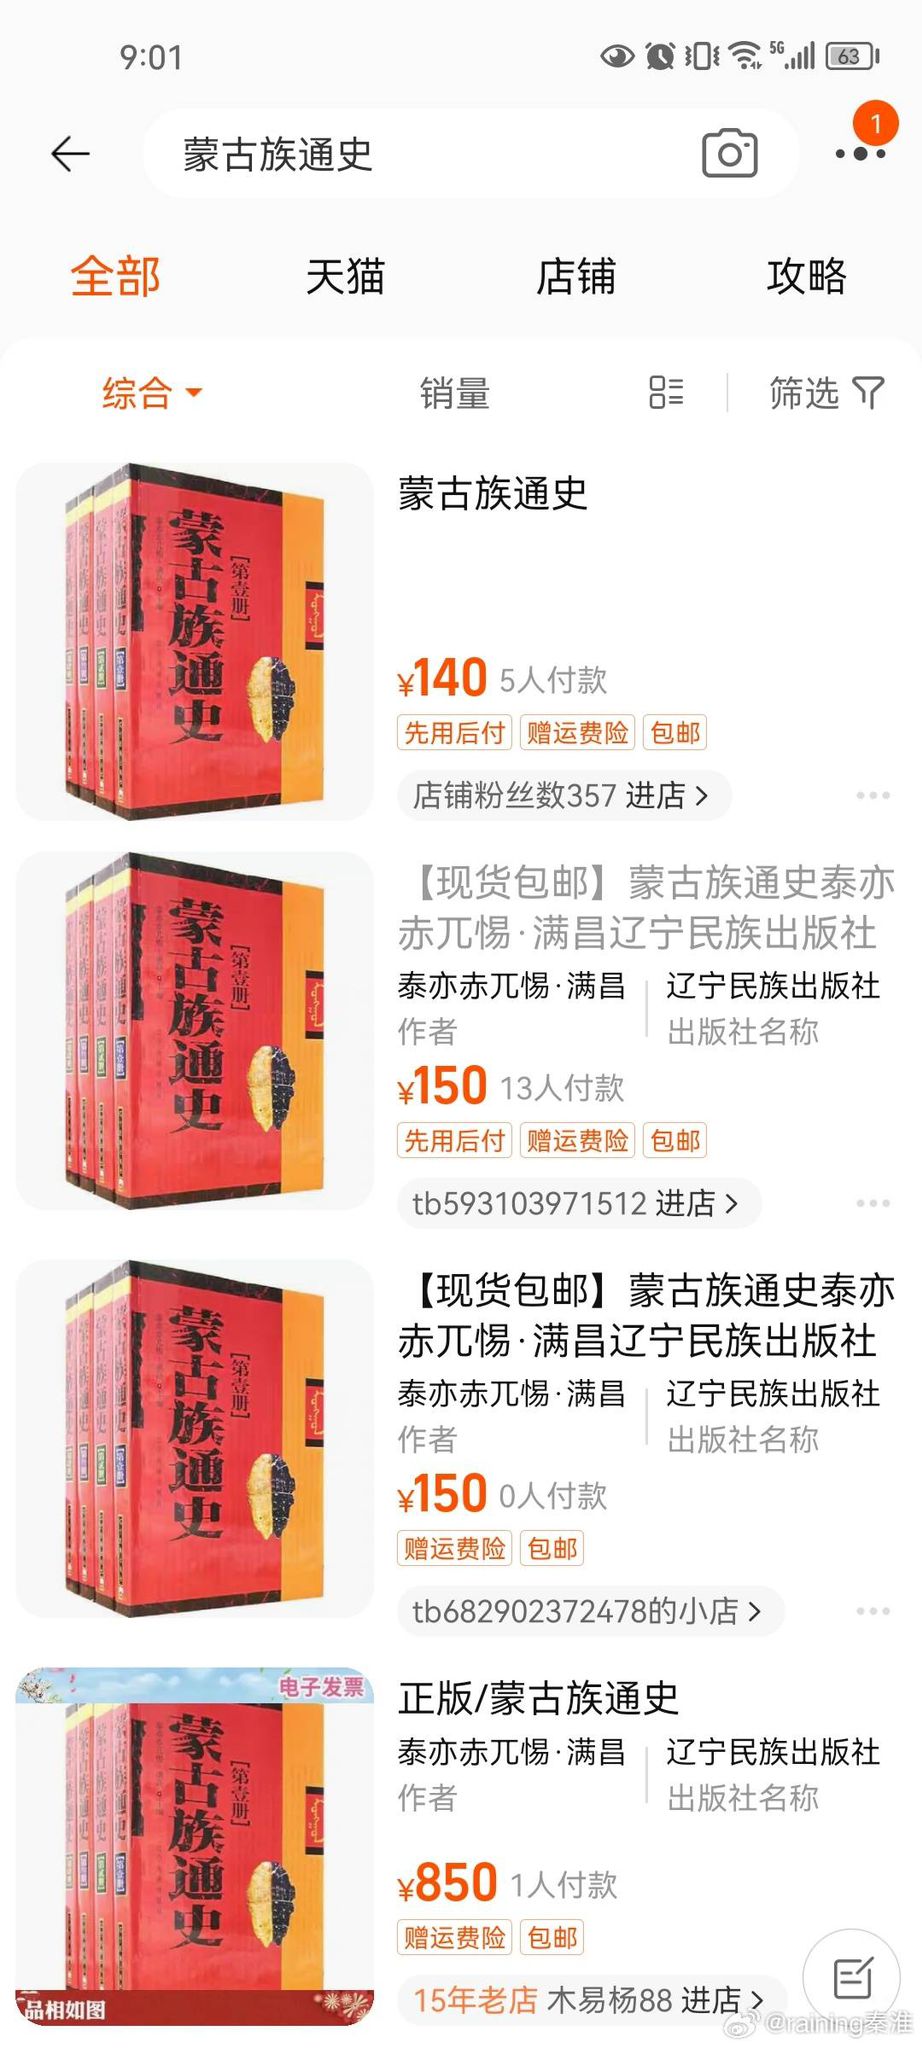 辽宁民族出版社出版的《蒙古族通史》被举报。